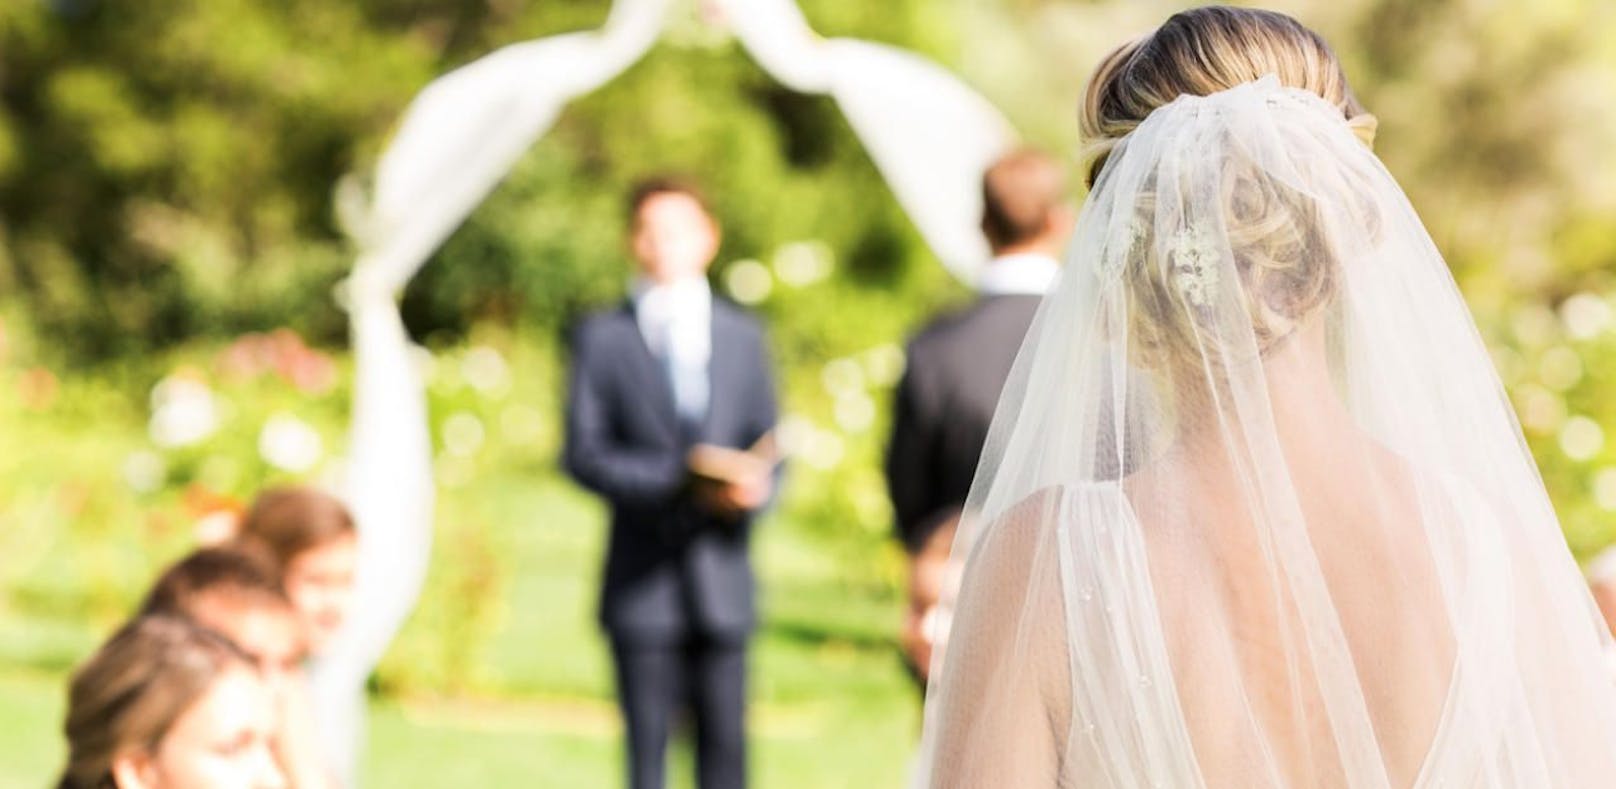 Eine Waliserin wollte sich ihre Hochzeit erschleichen.